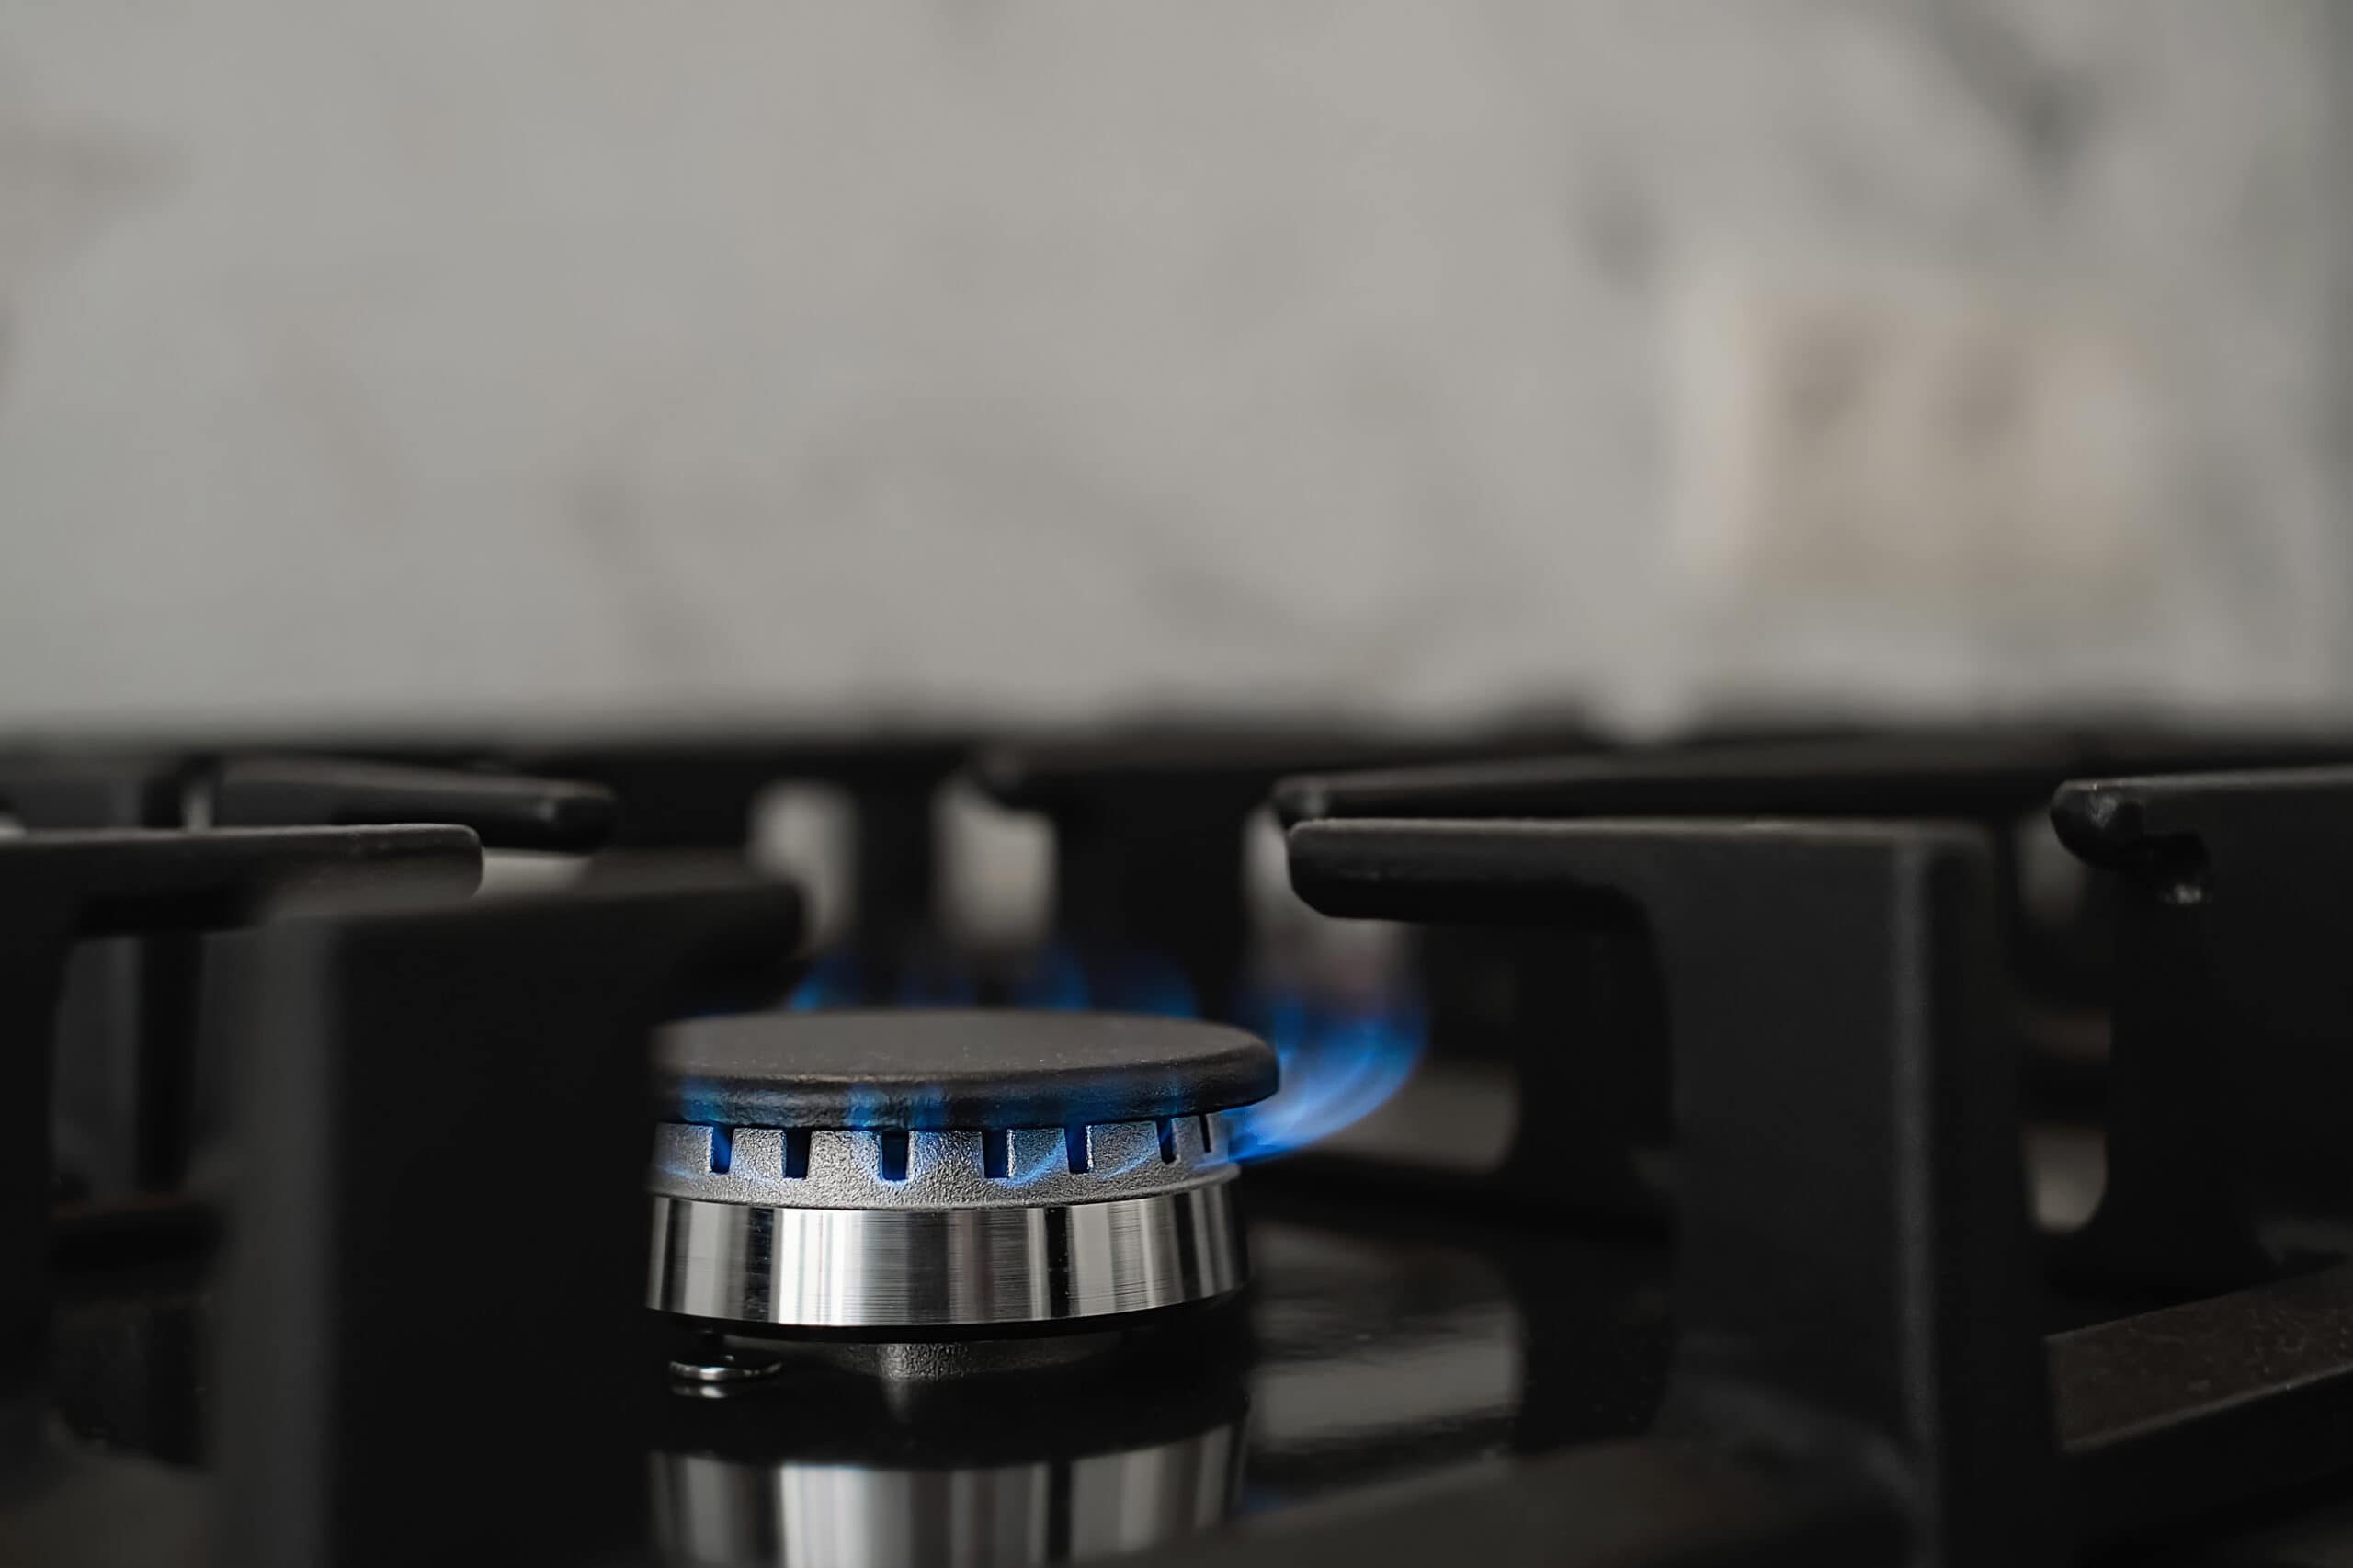 Servicio de Gas LP a domicilio SLP  - estufa cocina moderna gas natural quema llama azul consumo domestico gas primer plano enfoque selectivo scaled -